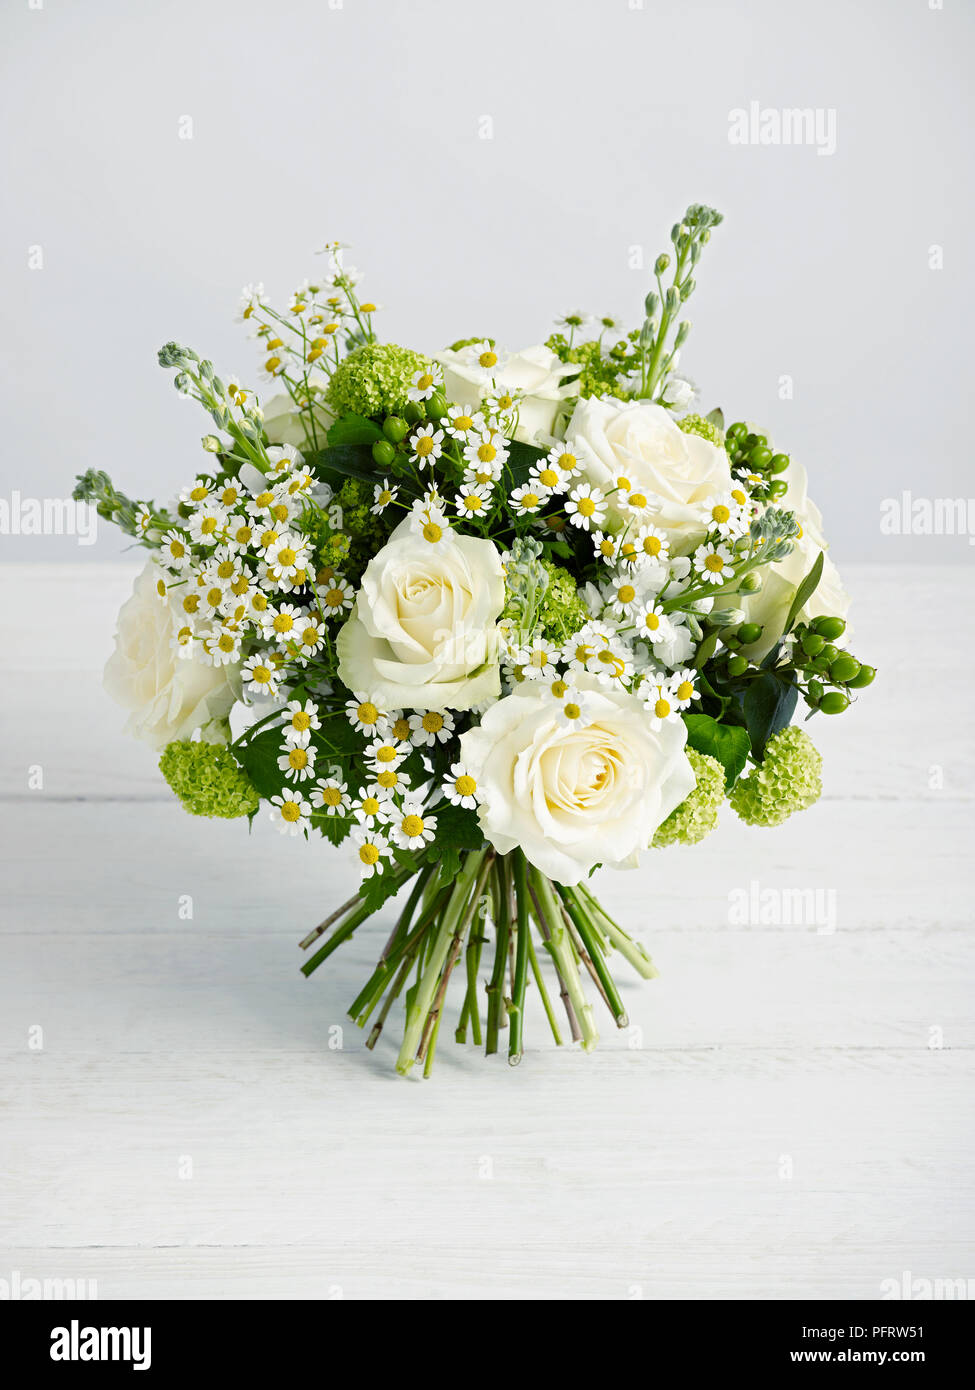 Blanc et vert bouquet composé de la barre d'hypericum vert, blanc, rose guelder, Alchemilla mollis, white rose, camomille Banque D'Images